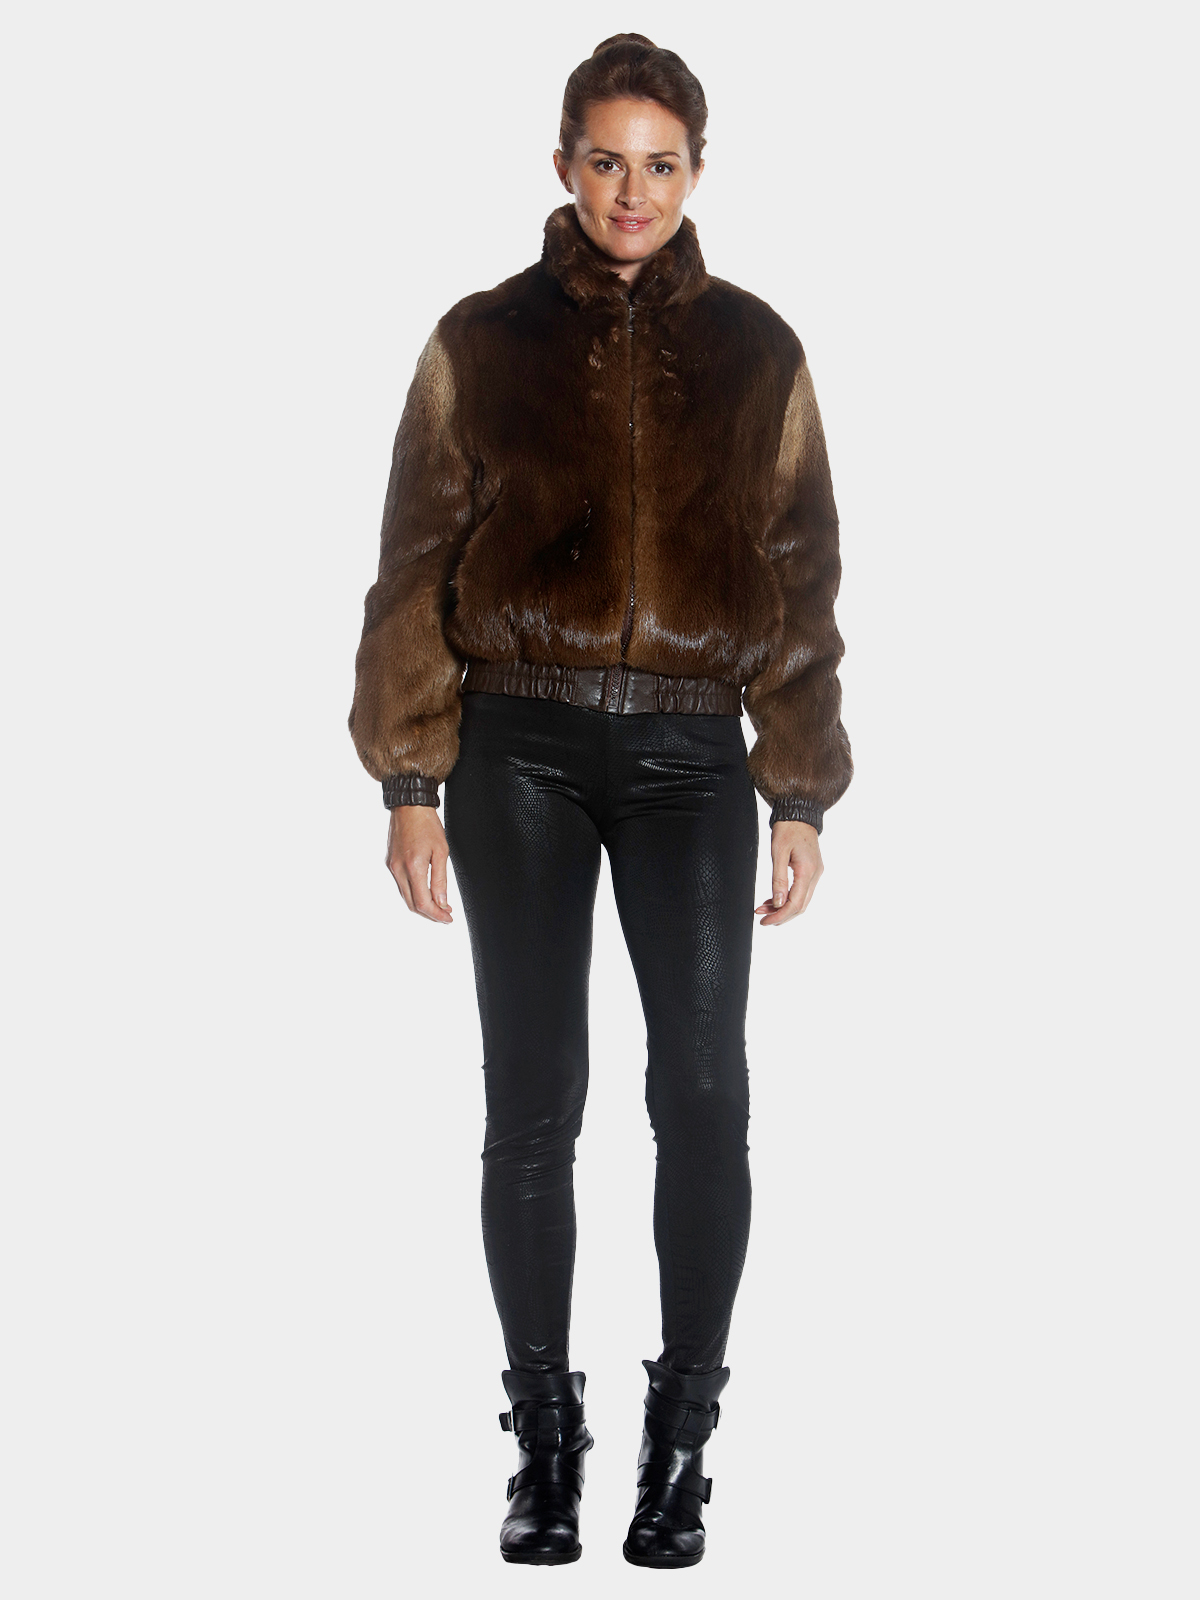 Brown Long Hair Otter Fur Jacket (Women's Medium) | Estate Furs